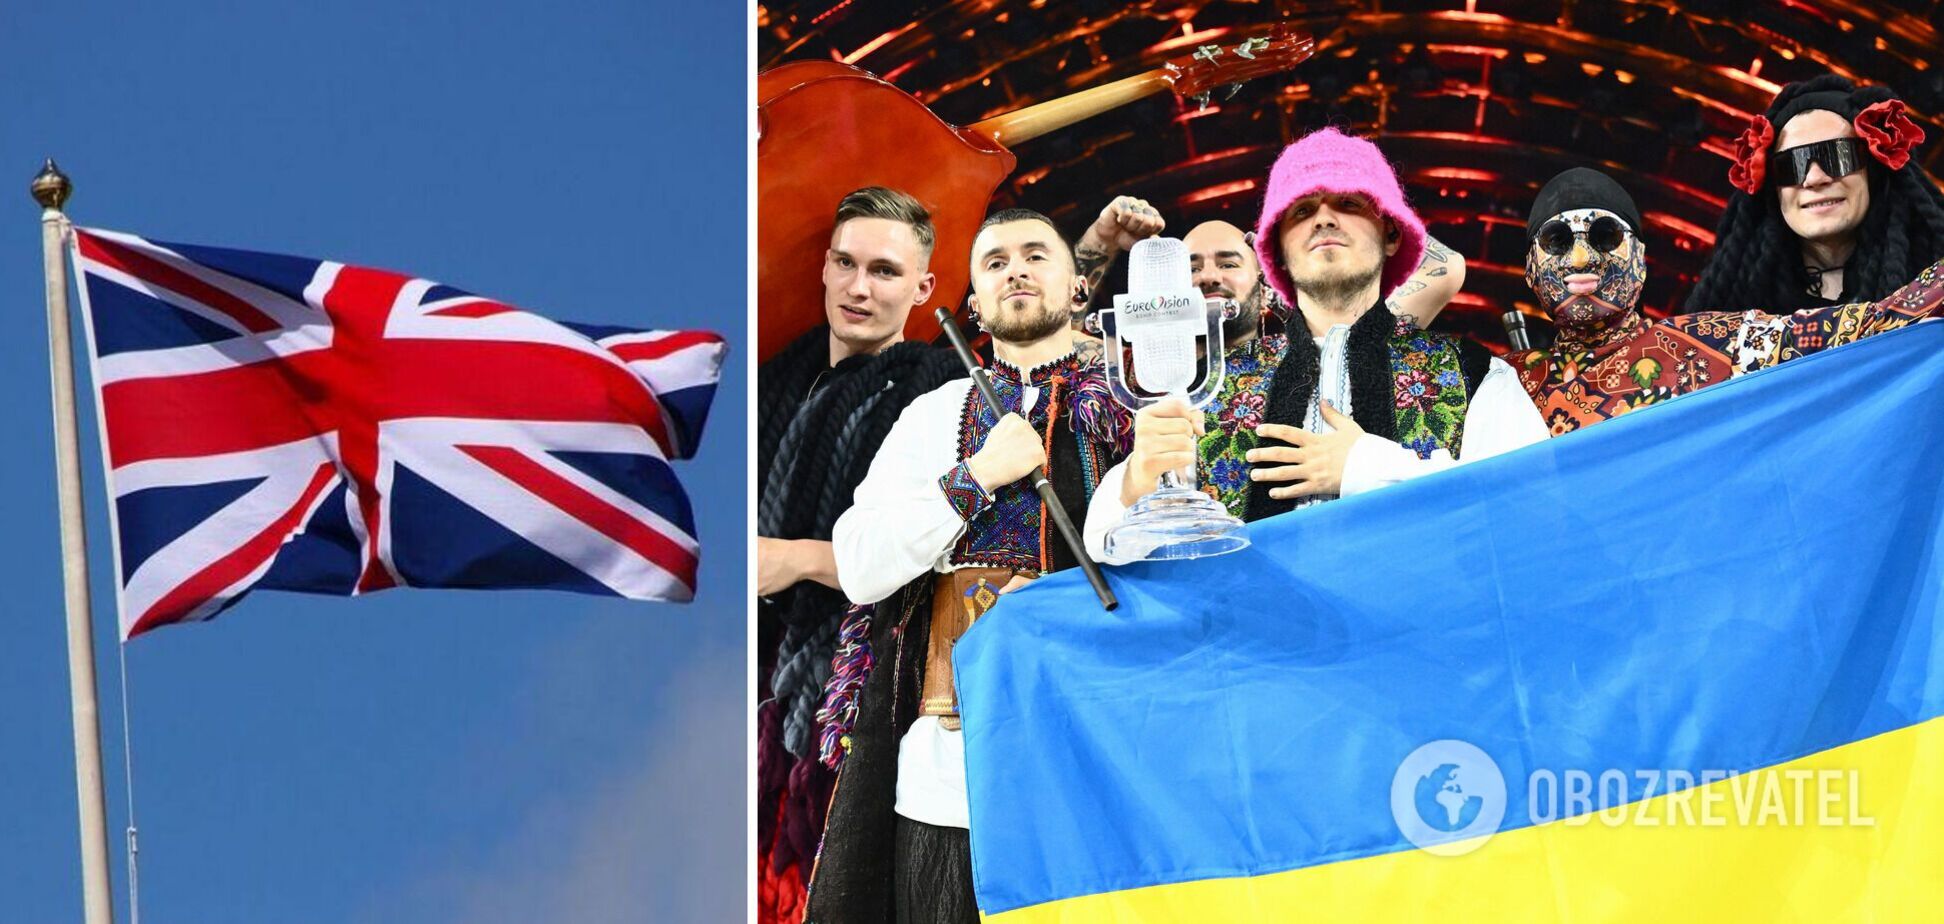 Україна не згодна з рішенням про перенесення Євробачення-2023 і буде його оскаржувати